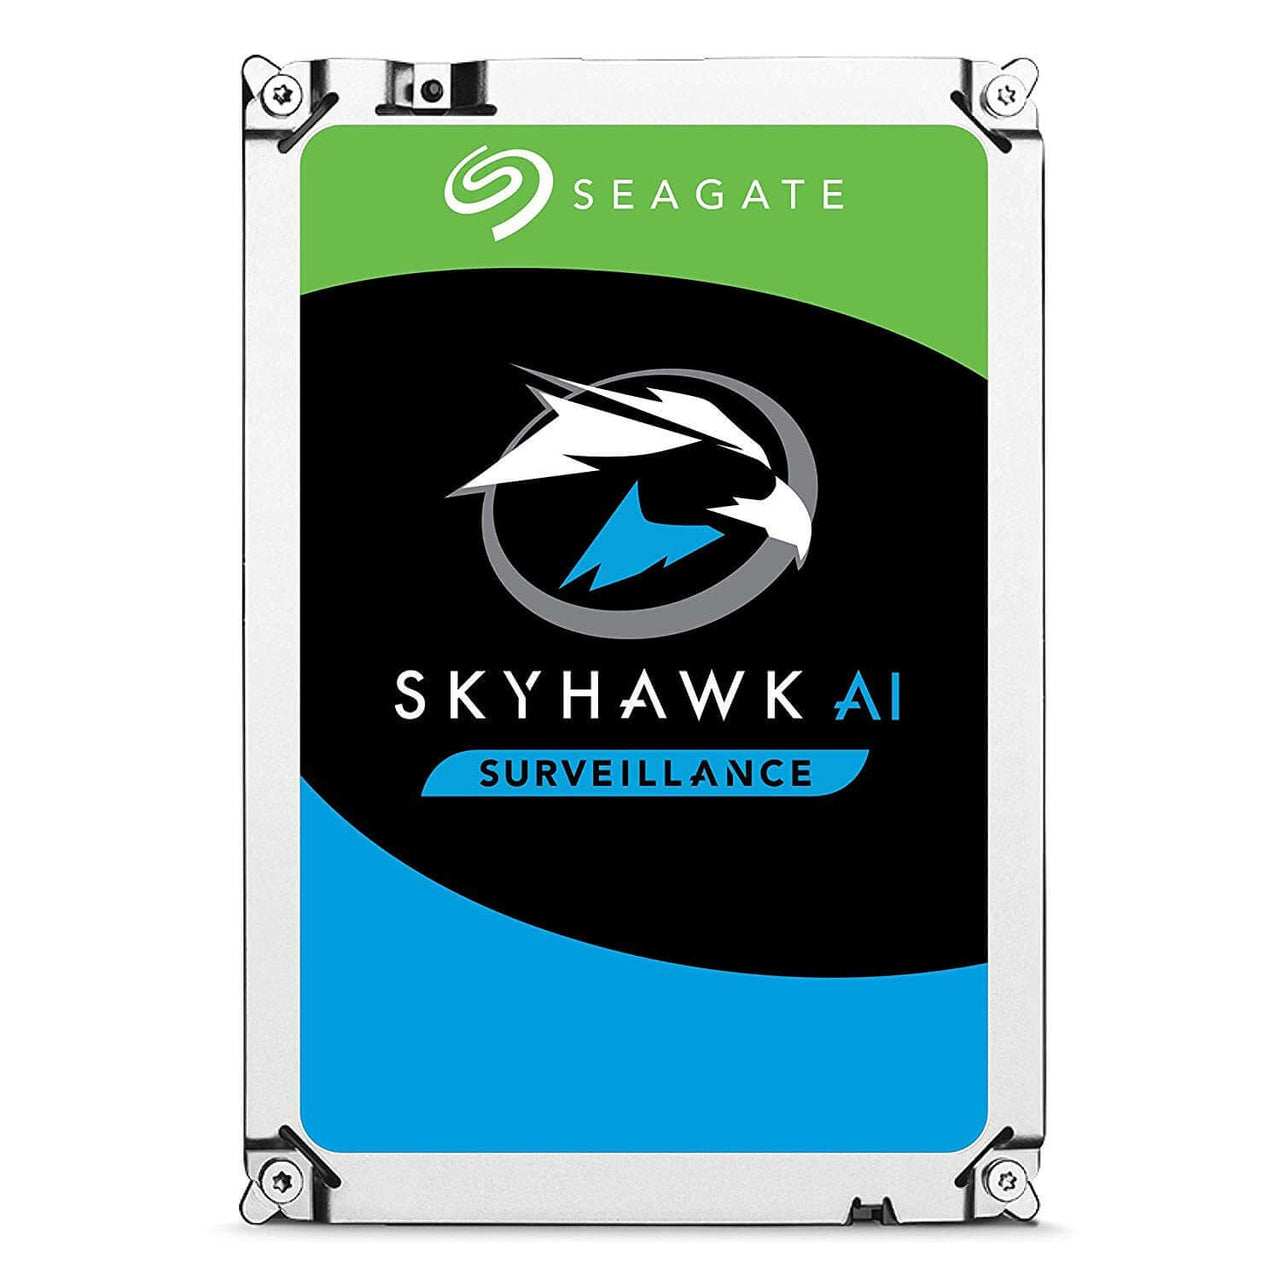 Seagate Skyhawk AI 14TB SATA Hard Drives Dubai UAE